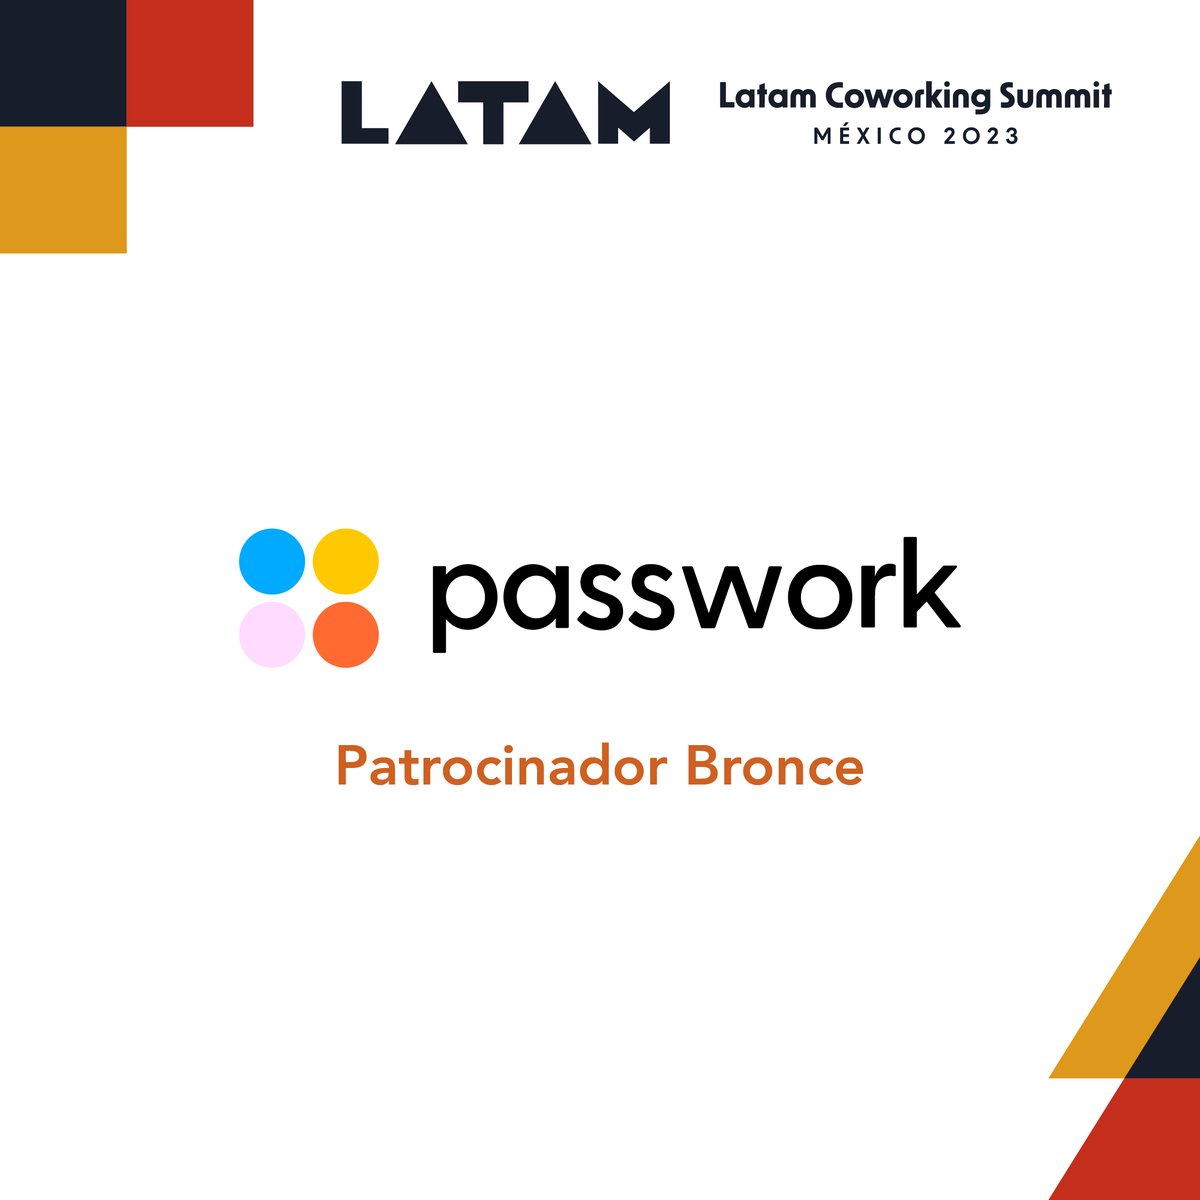 ¡Gracias a @PASSWORKMX por ser Patrocinador Bronce de Latam Coworking Summit 2023!
👉🏼Con Passwork, ¡el mundo es tu oficina! Conoce más en passwork.mx

¡Ampliamos nuestra preventa Early Bird! Asegura tu acceso a #LCS23 en bit.ly/latamcoworking…